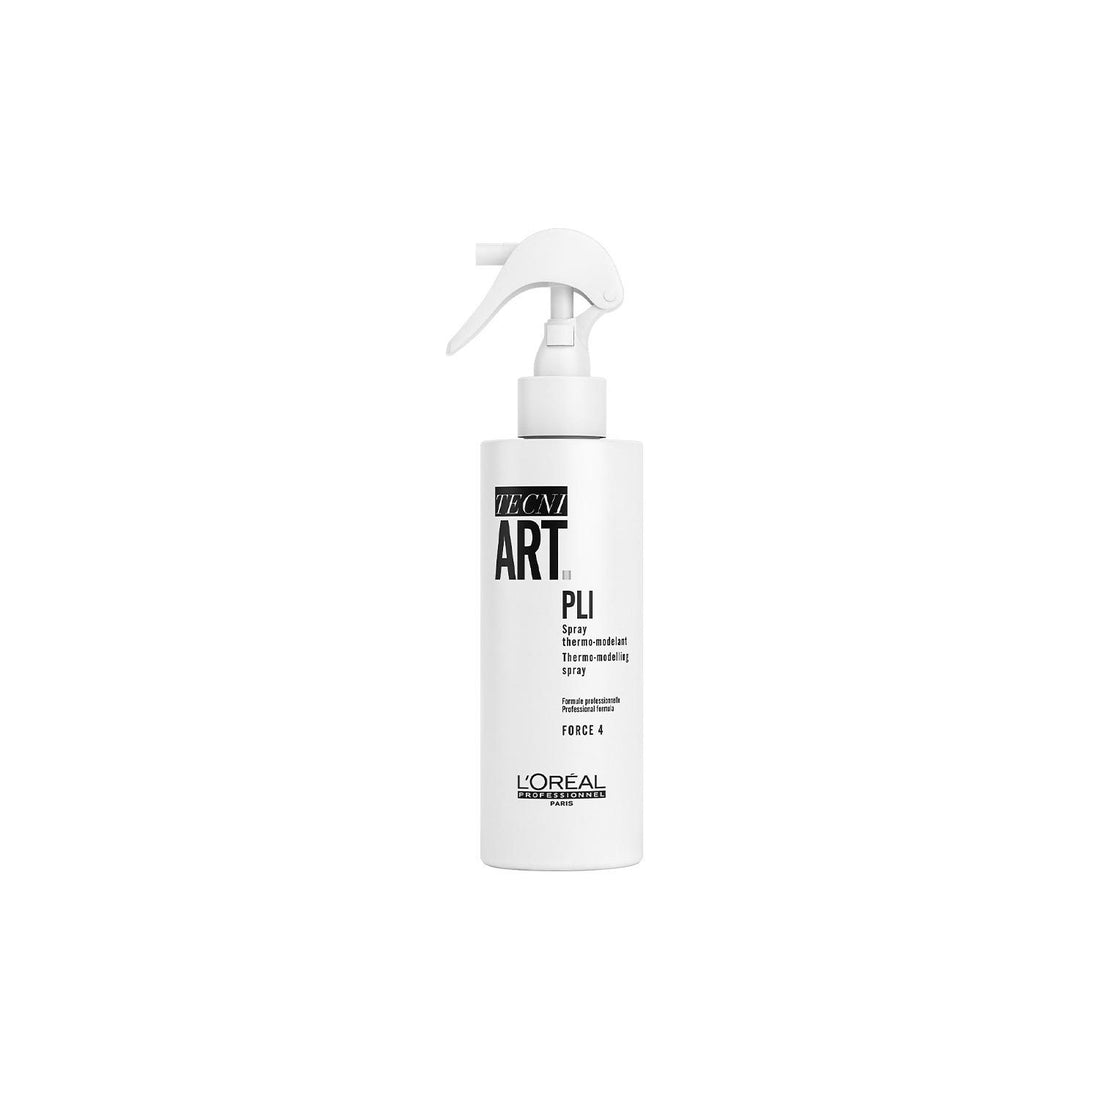 TECNI-ART Pli Shaper spray 190ml